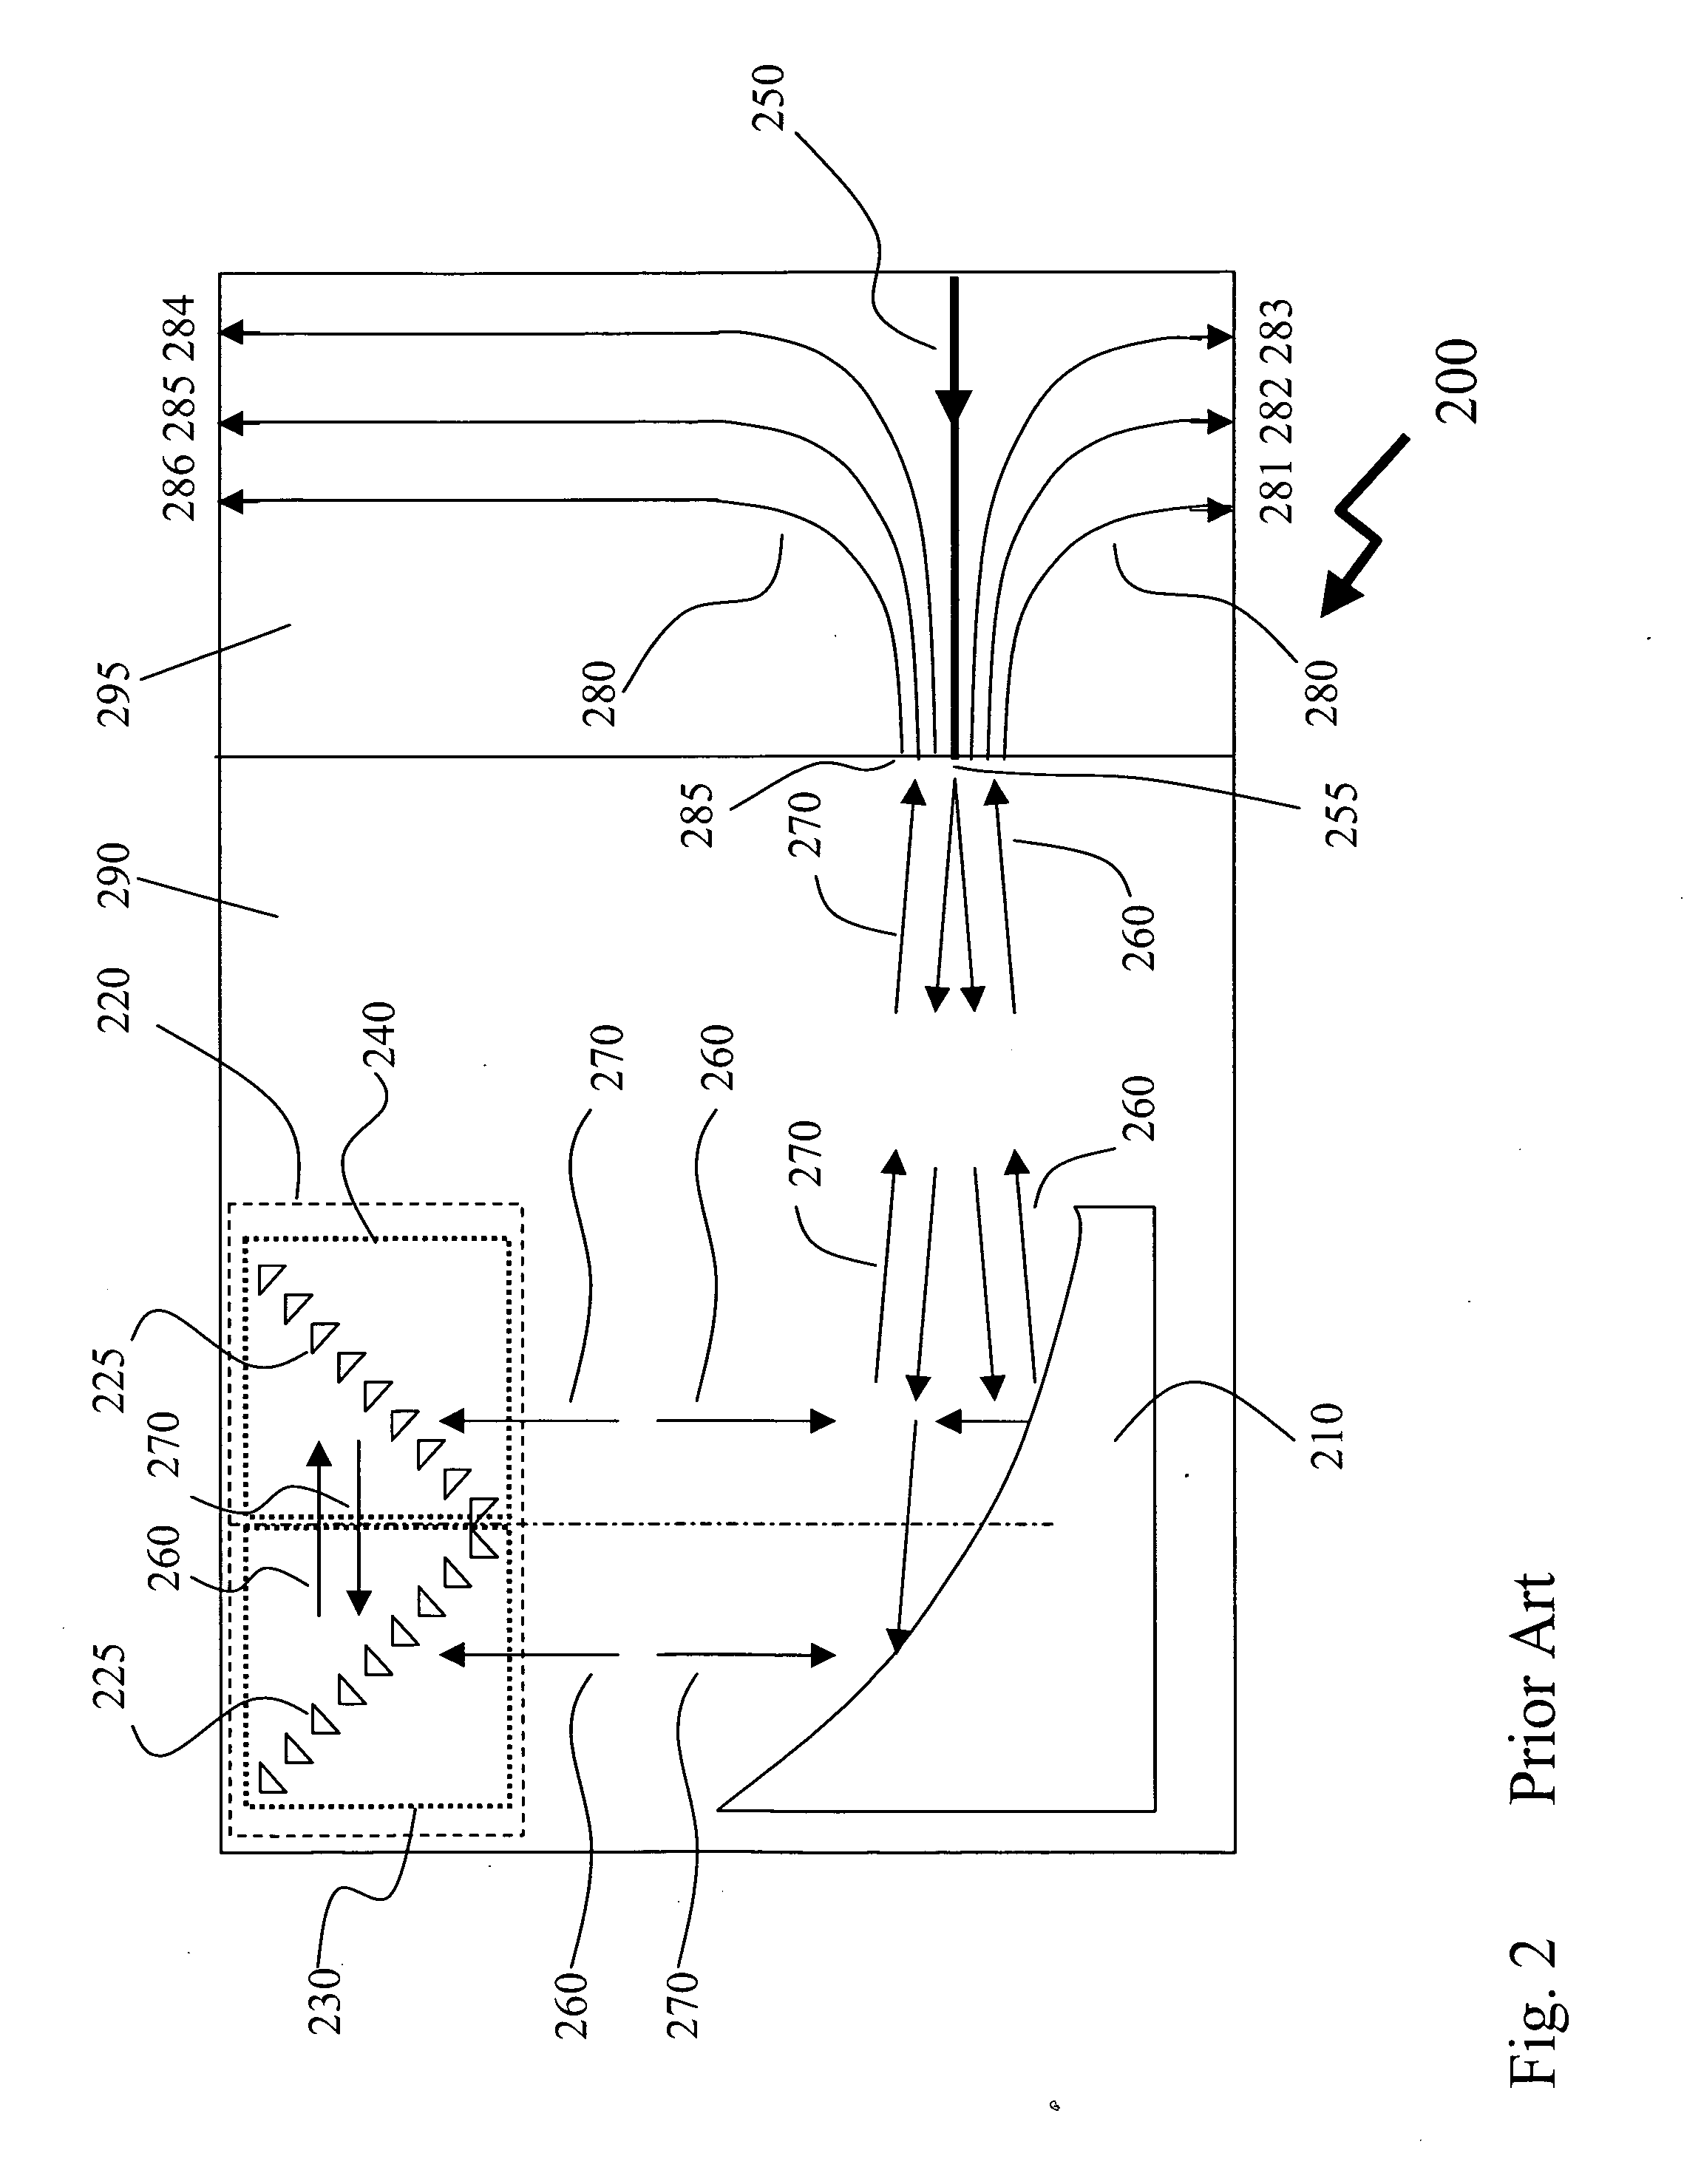 Integrated etched multilayer grating based wavelength demultiplexer